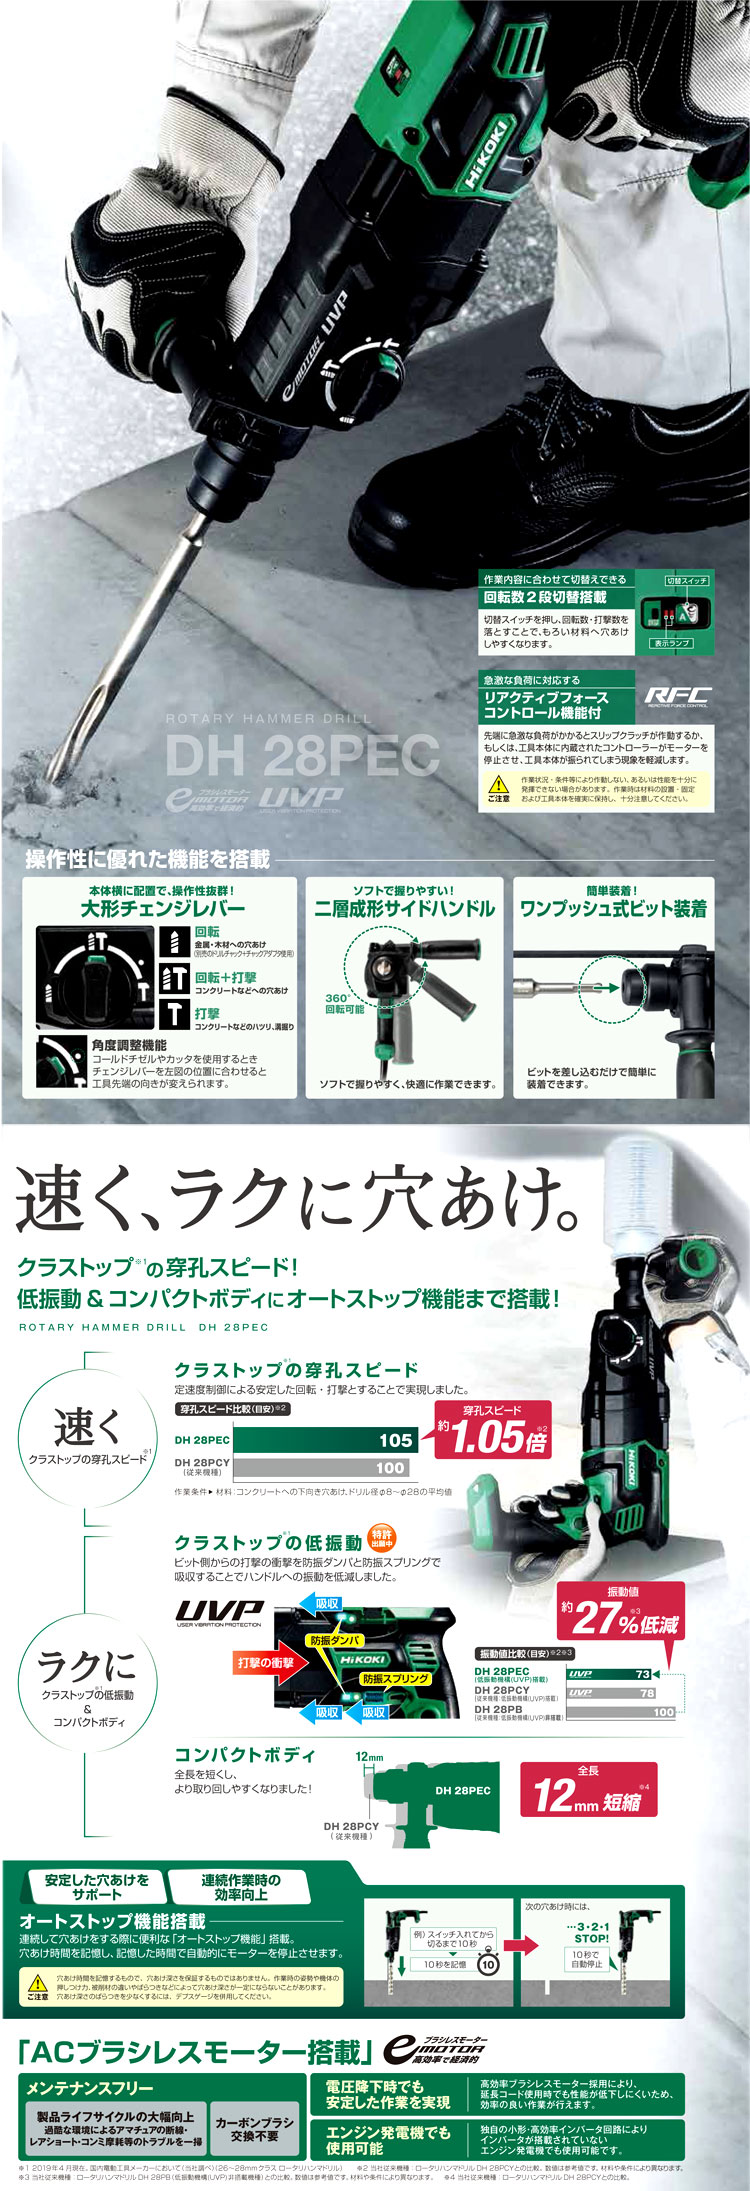 ハイコーキ 28mmロータリハンマドリル【ブラシレスモーター】 DH28PEC